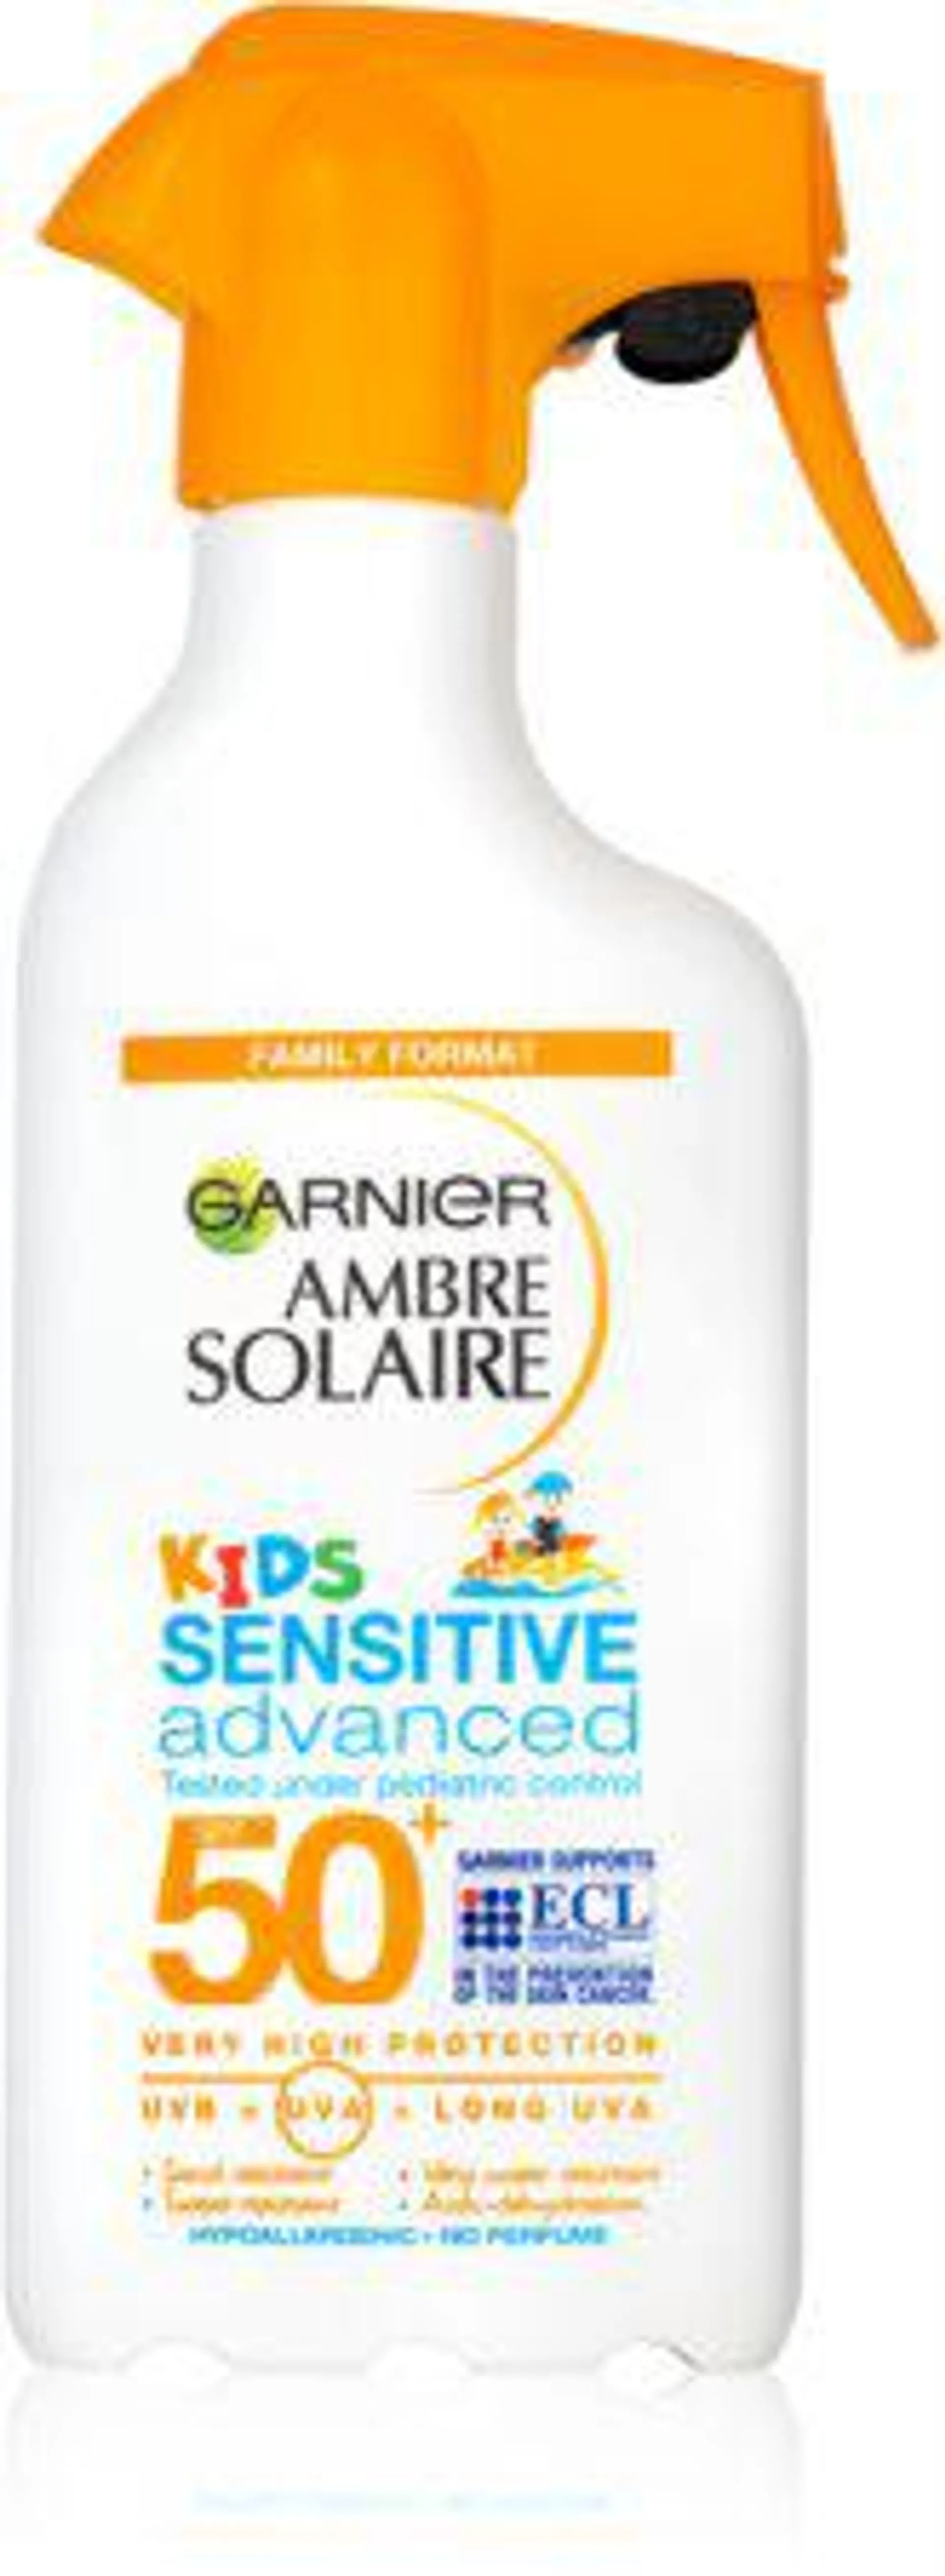 Ambre Solaire Kids Sensitive